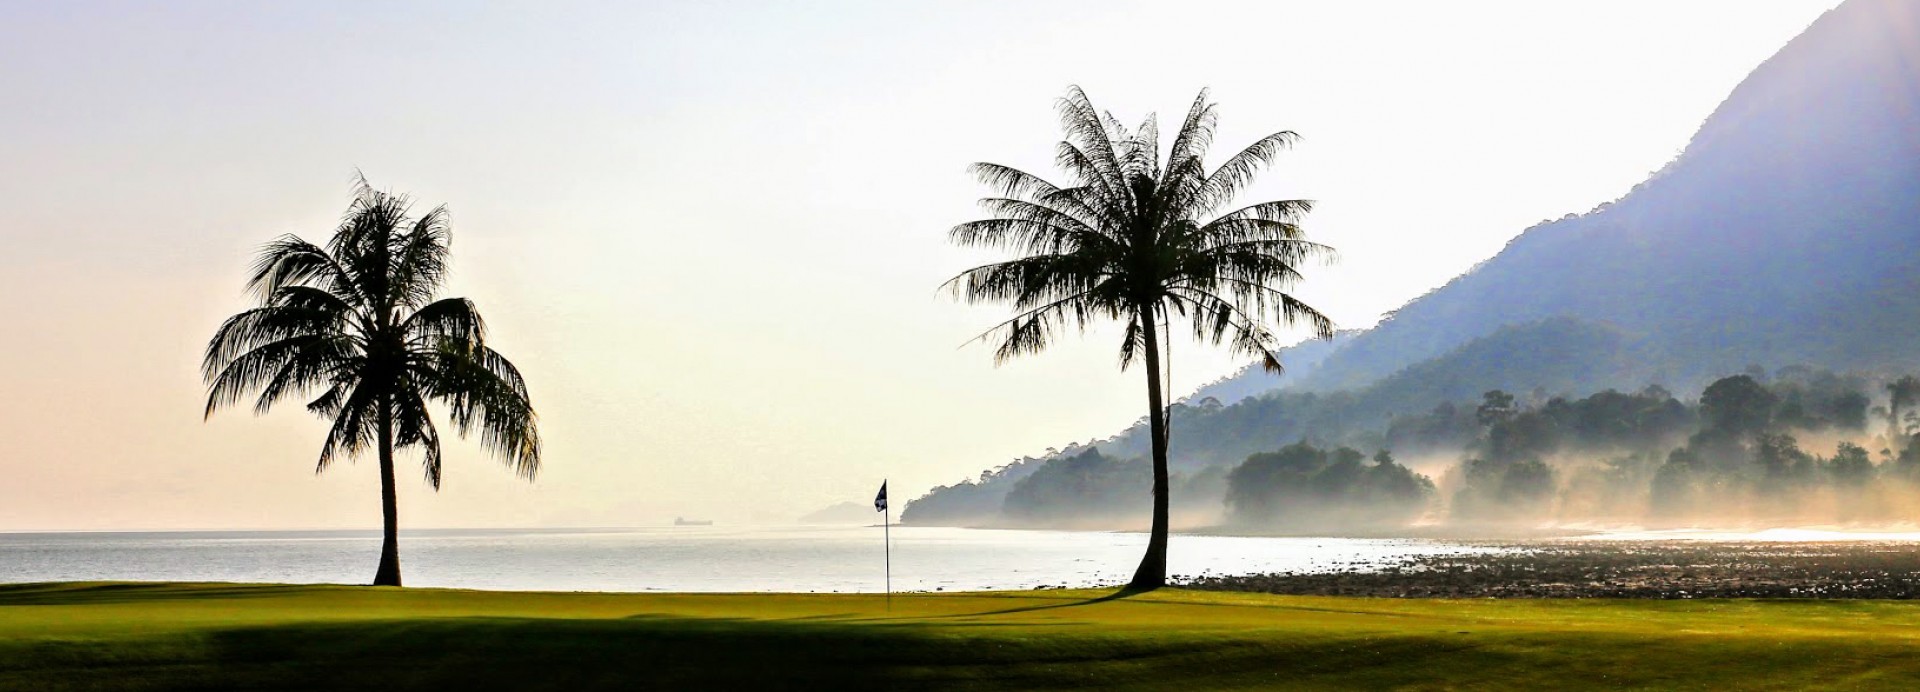 Els Club Datai Teluk  | Golfové zájezdy, golfová dovolená, luxusní golf